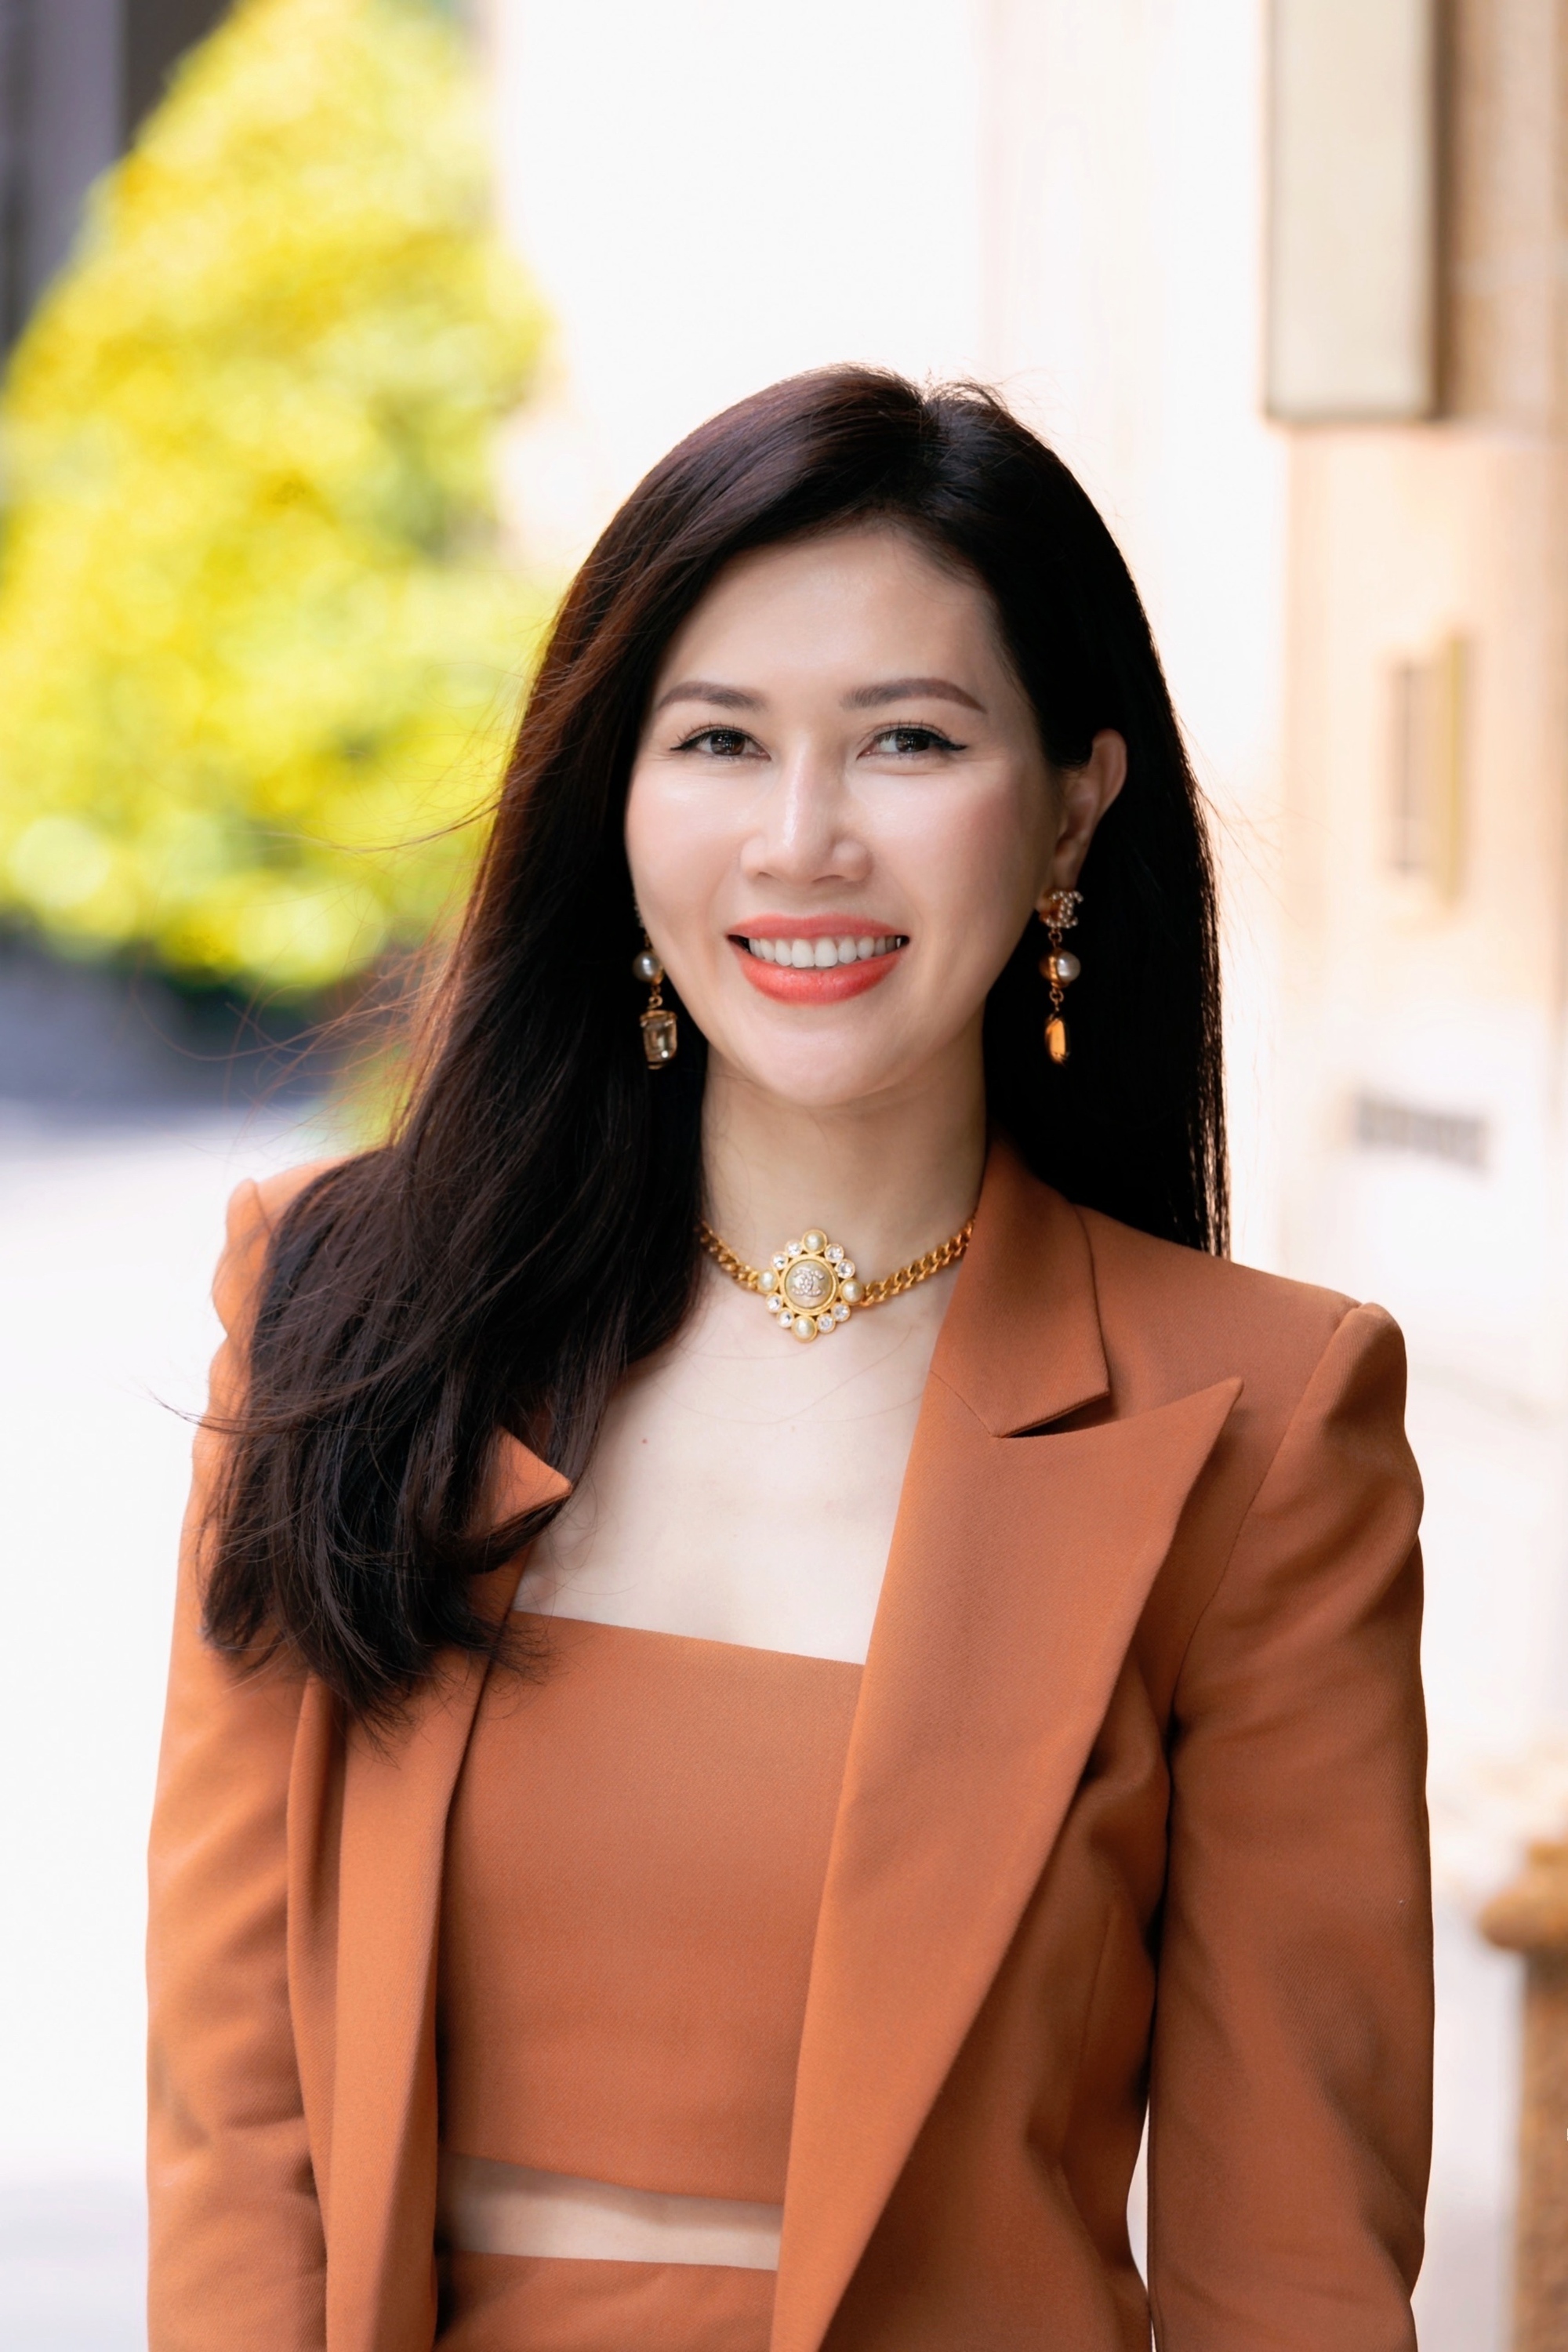 Nữ bác sĩ Anna Trần và câu chuyện về nhiều người có xu hướng &quot;tìm lại nụ cười&quot; dù đã có ngoại hình đẹp - Ảnh 7.